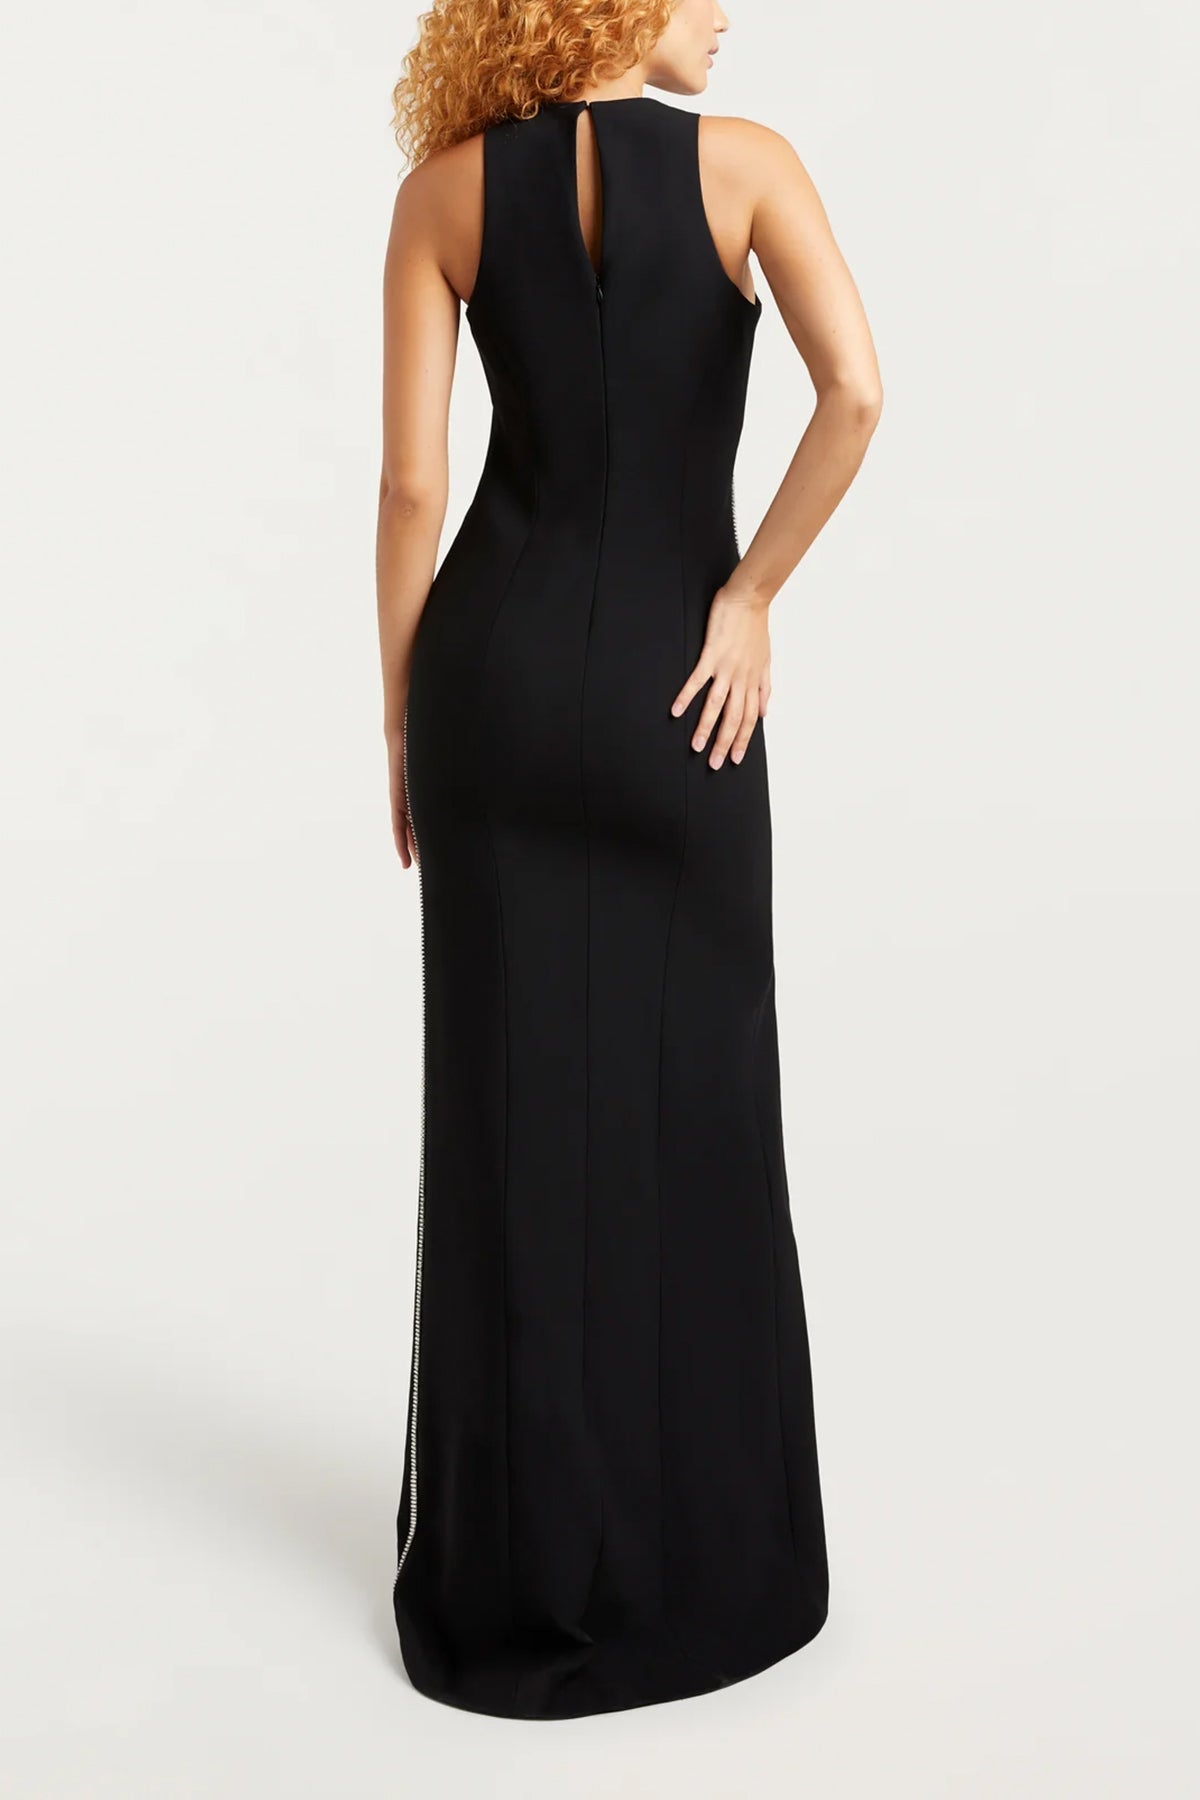 Bevin Gown in Black - shop-olivia.com